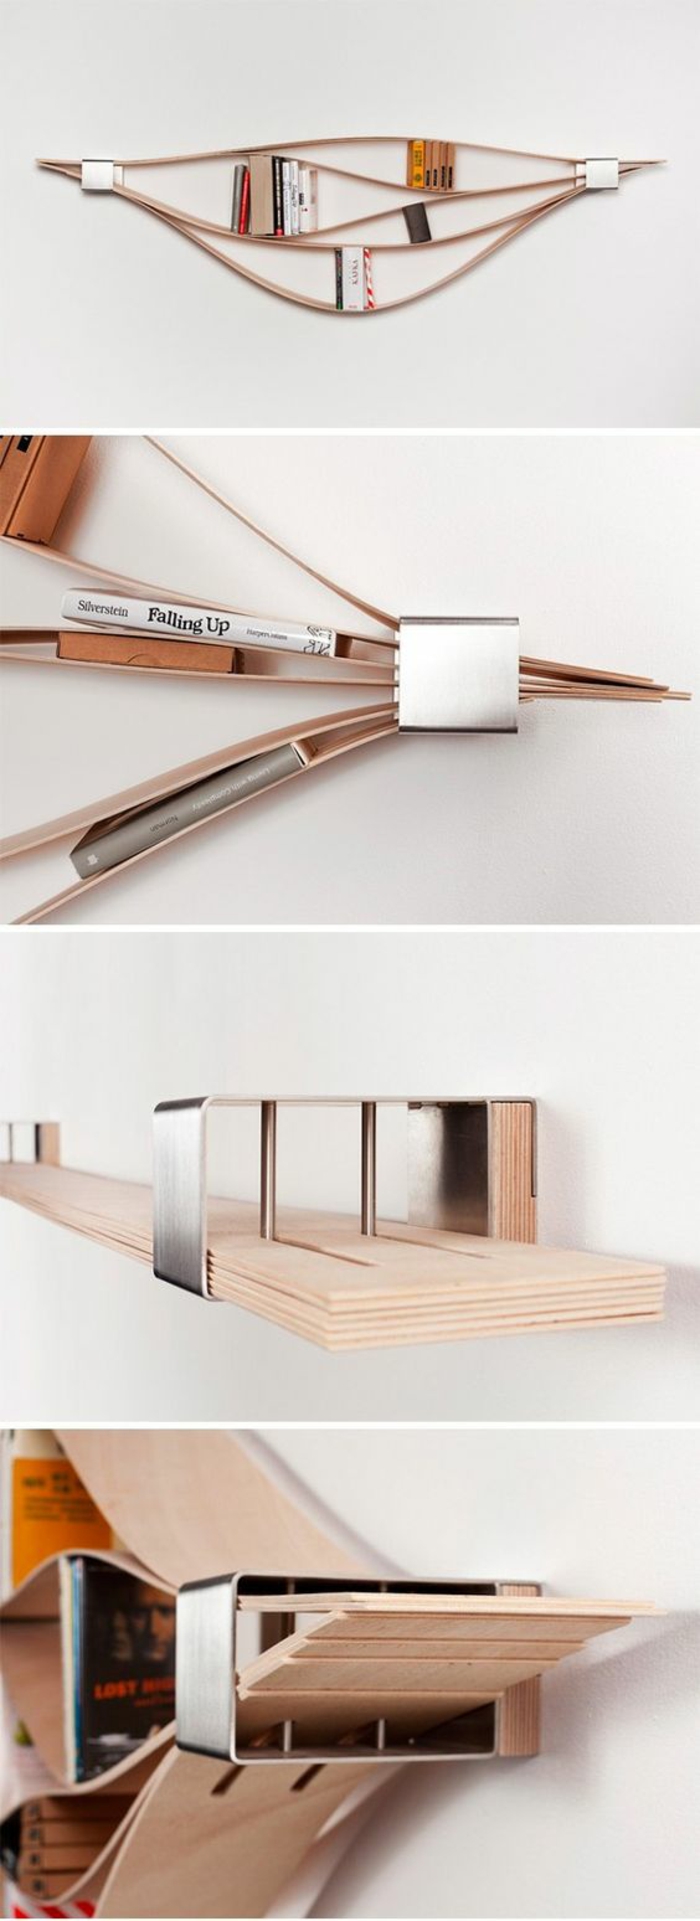 11-kirjahylly-oma-build-puukappaleiden-DIY-hyllyt-kirjat-wall suunnittelu-wanddeko